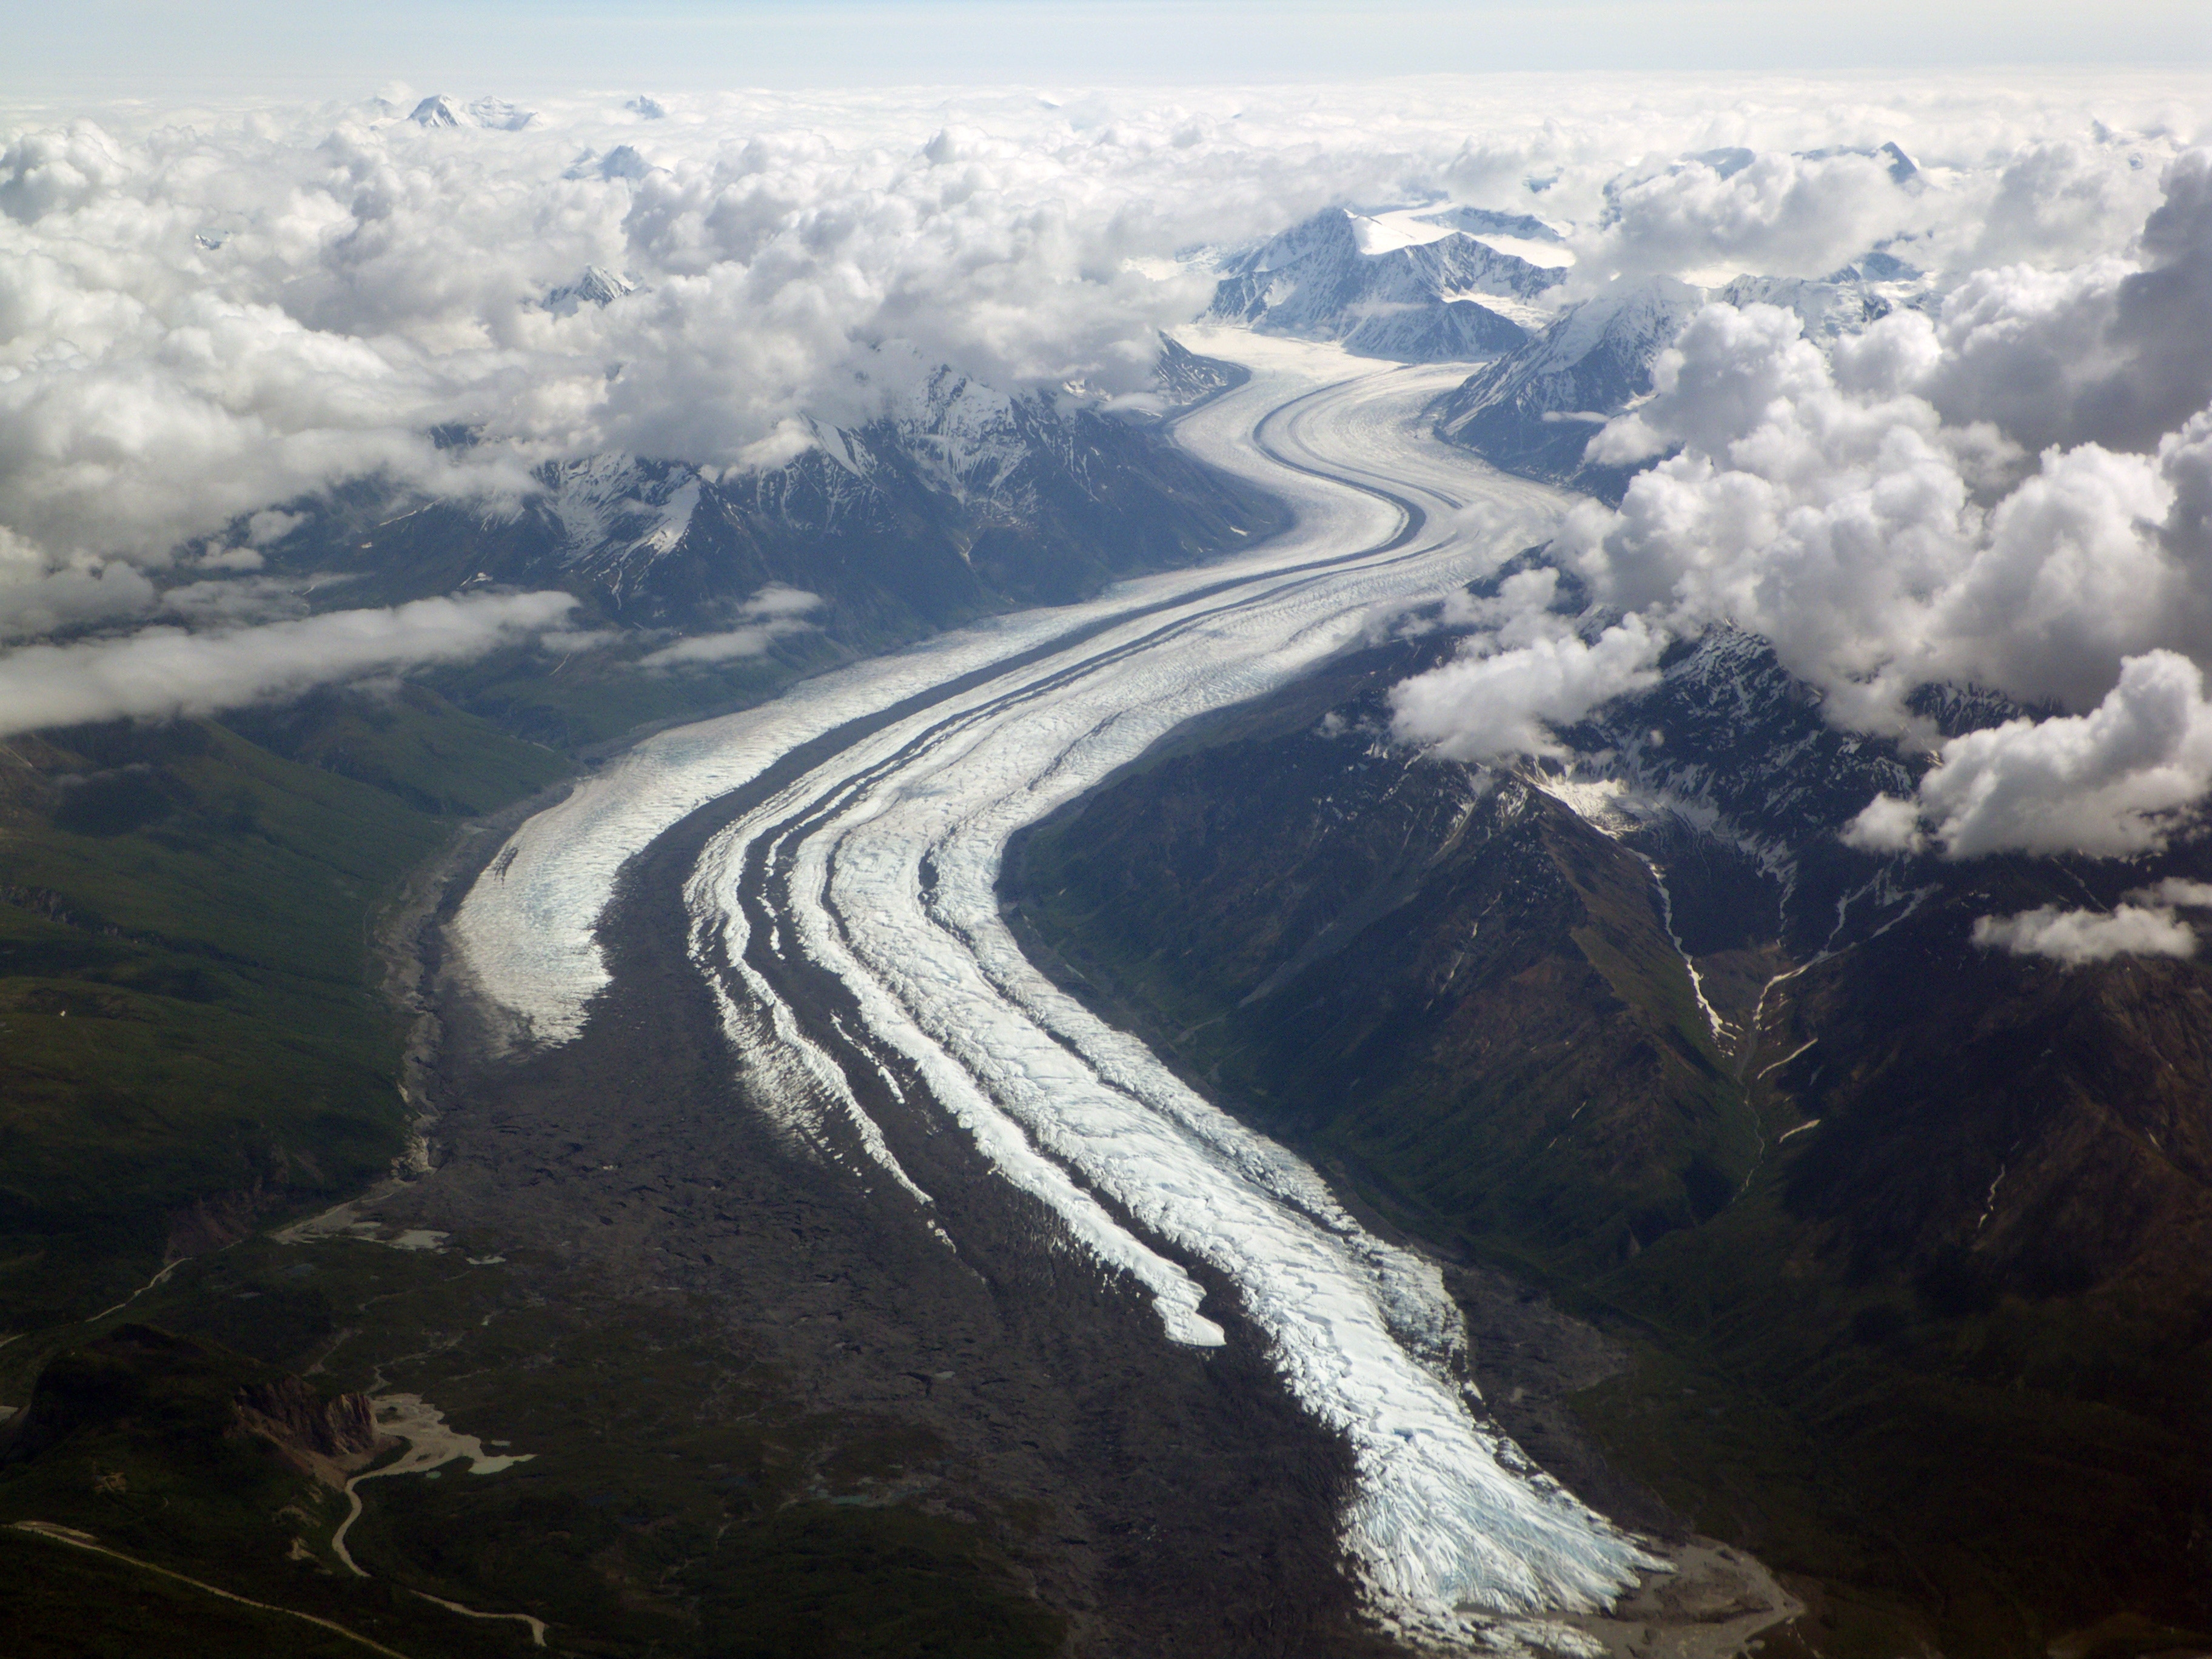 Matanuska Glacier From The Air